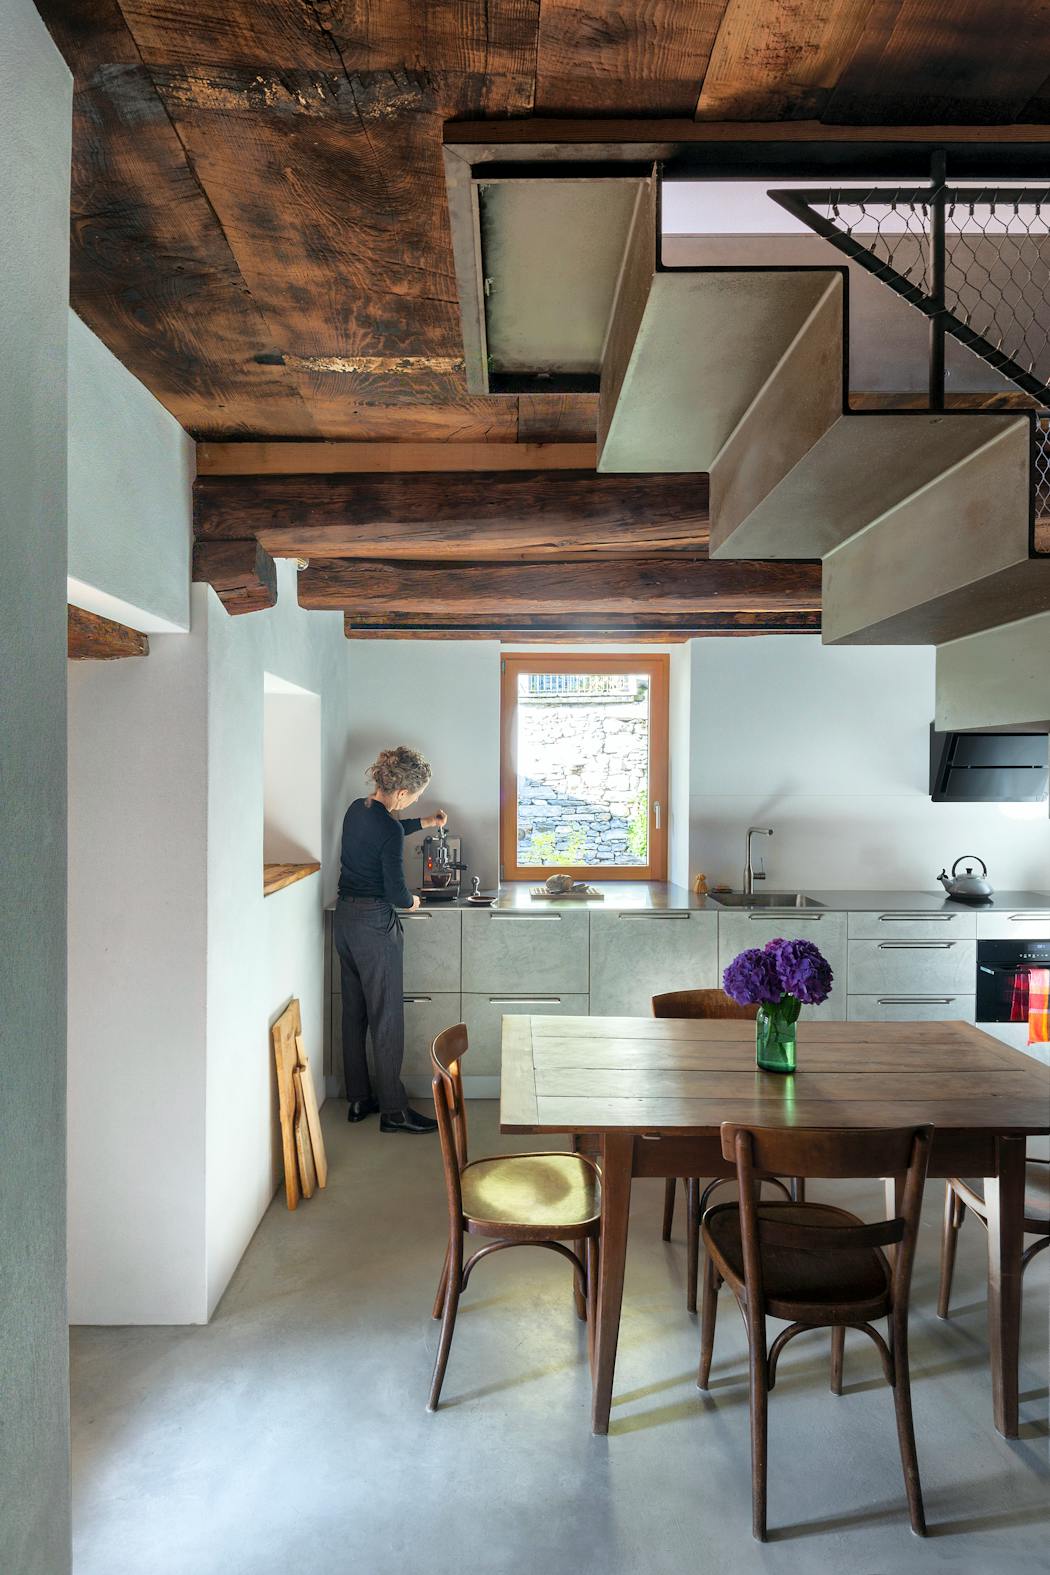 Vue de la cuisine avec plafond ancien mobilier contemporain.